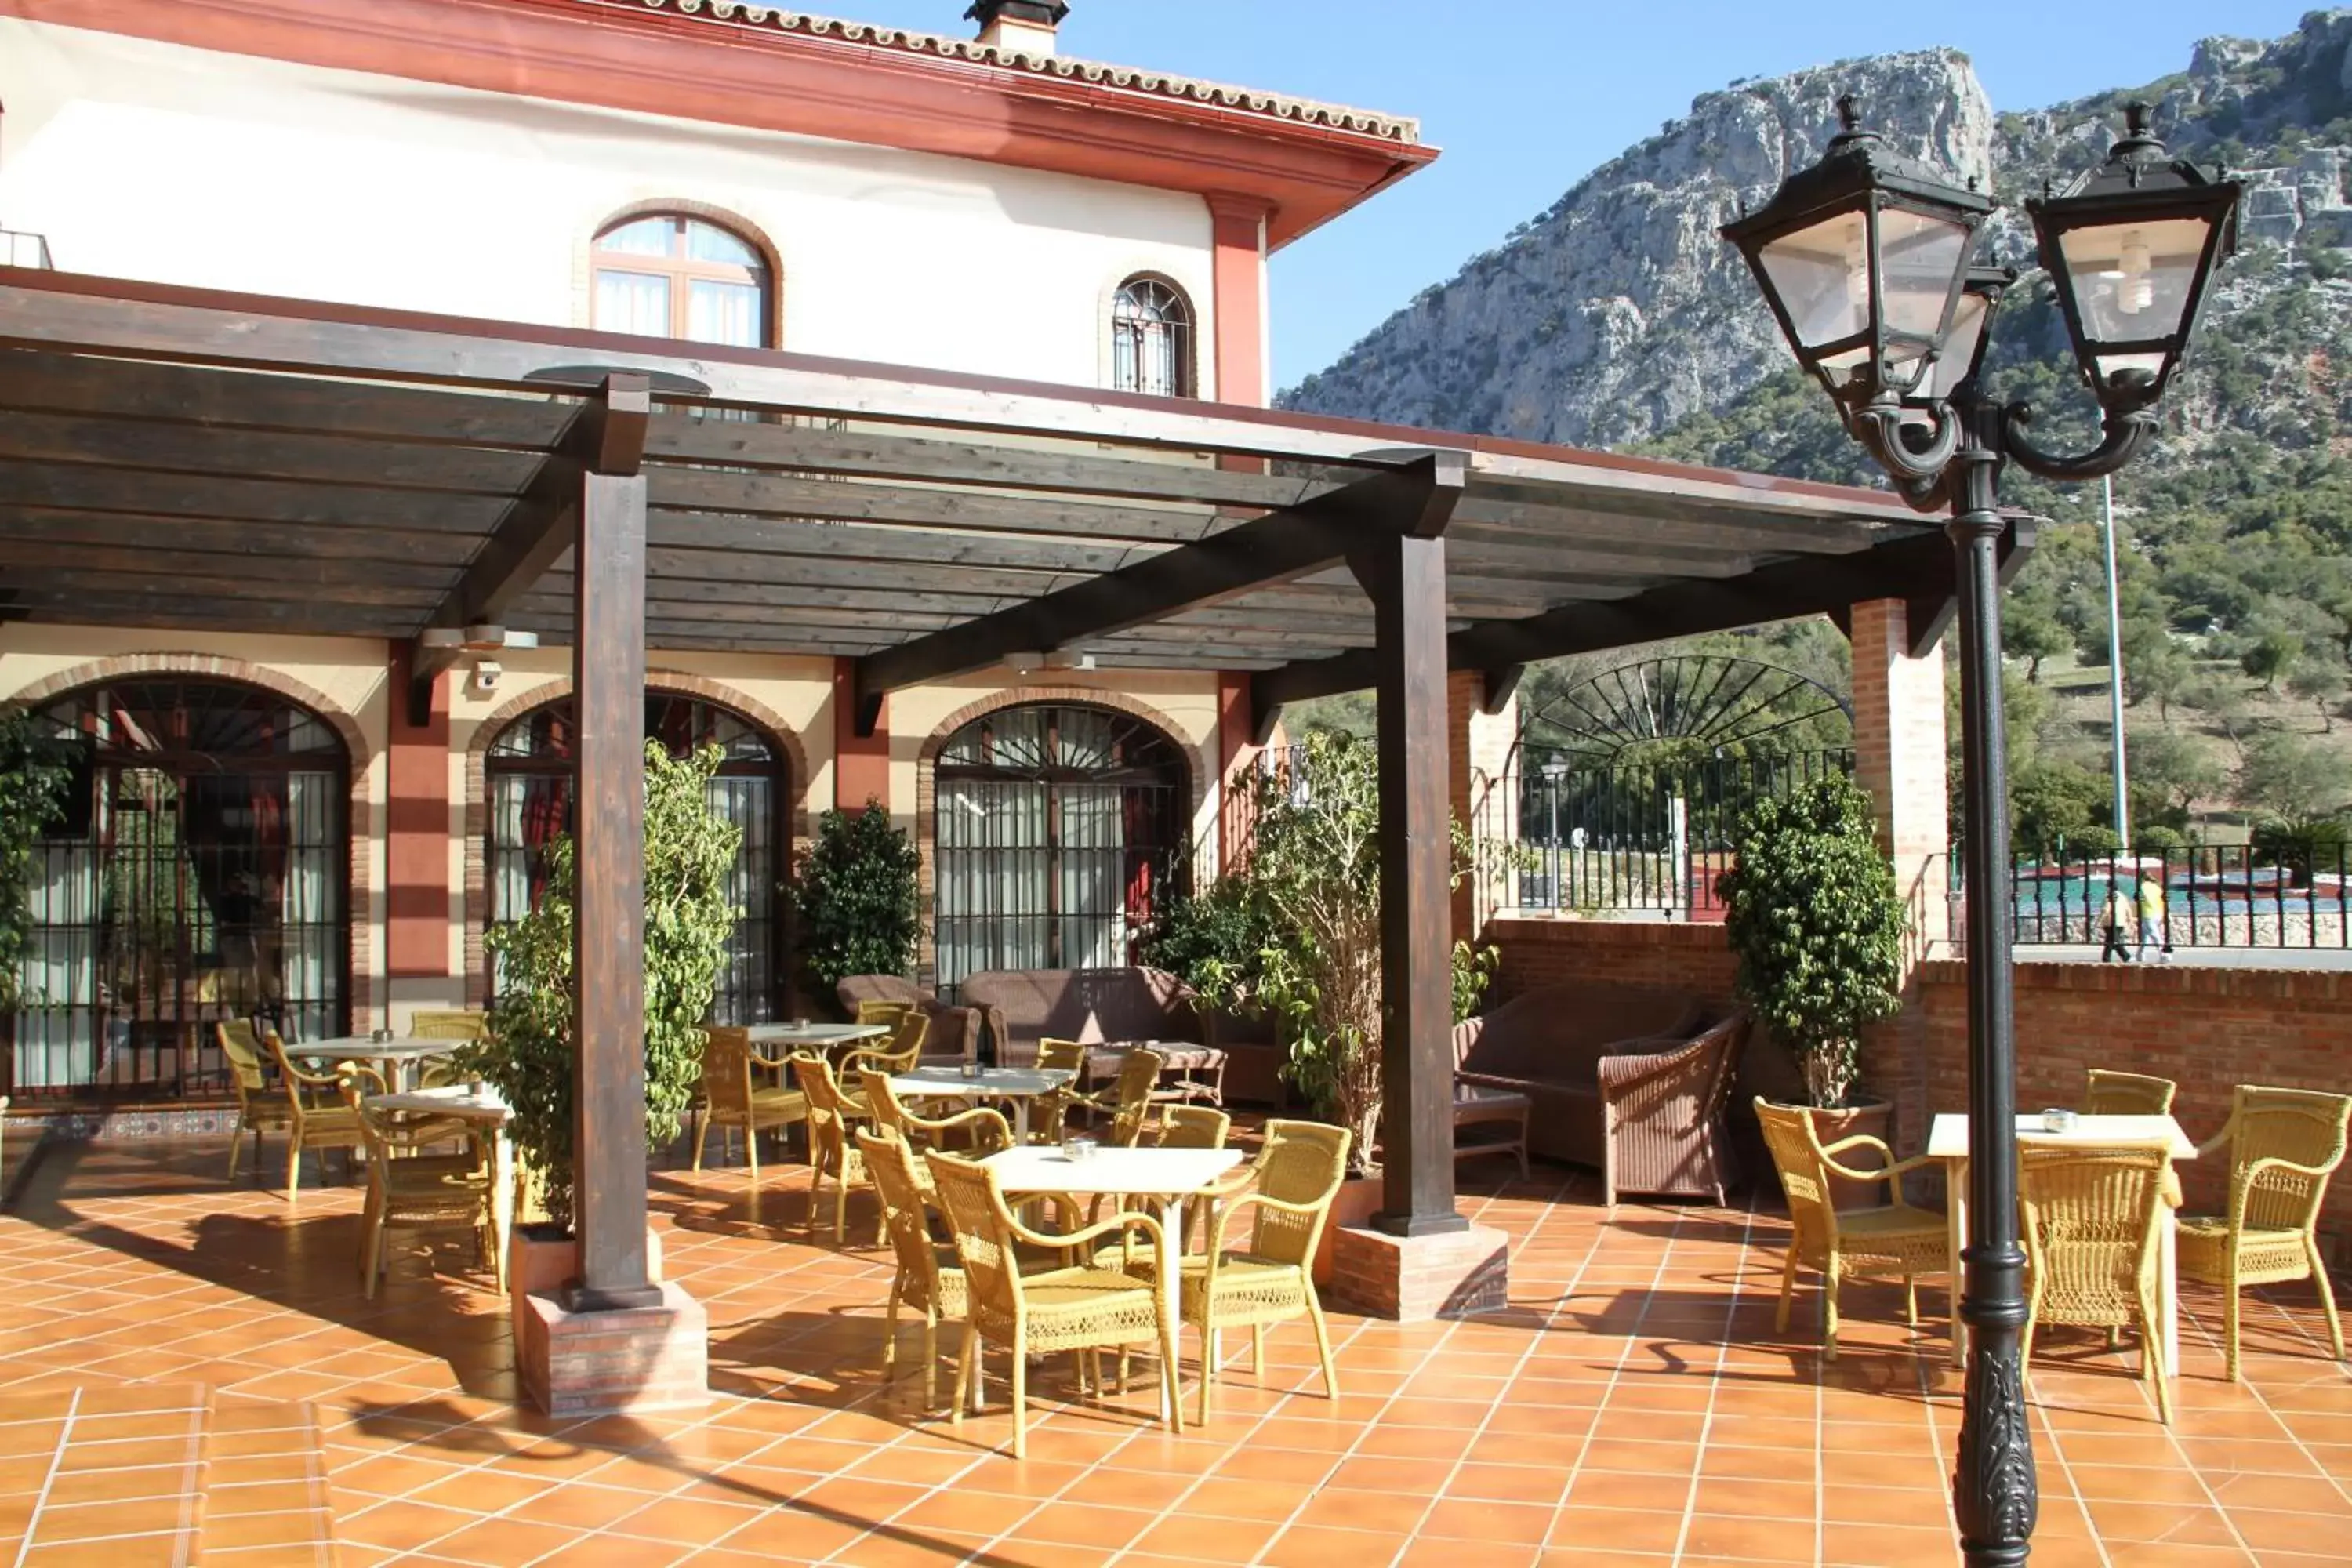 Facade/entrance, Restaurant/Places to Eat in Hotel Sierra de Ubrique